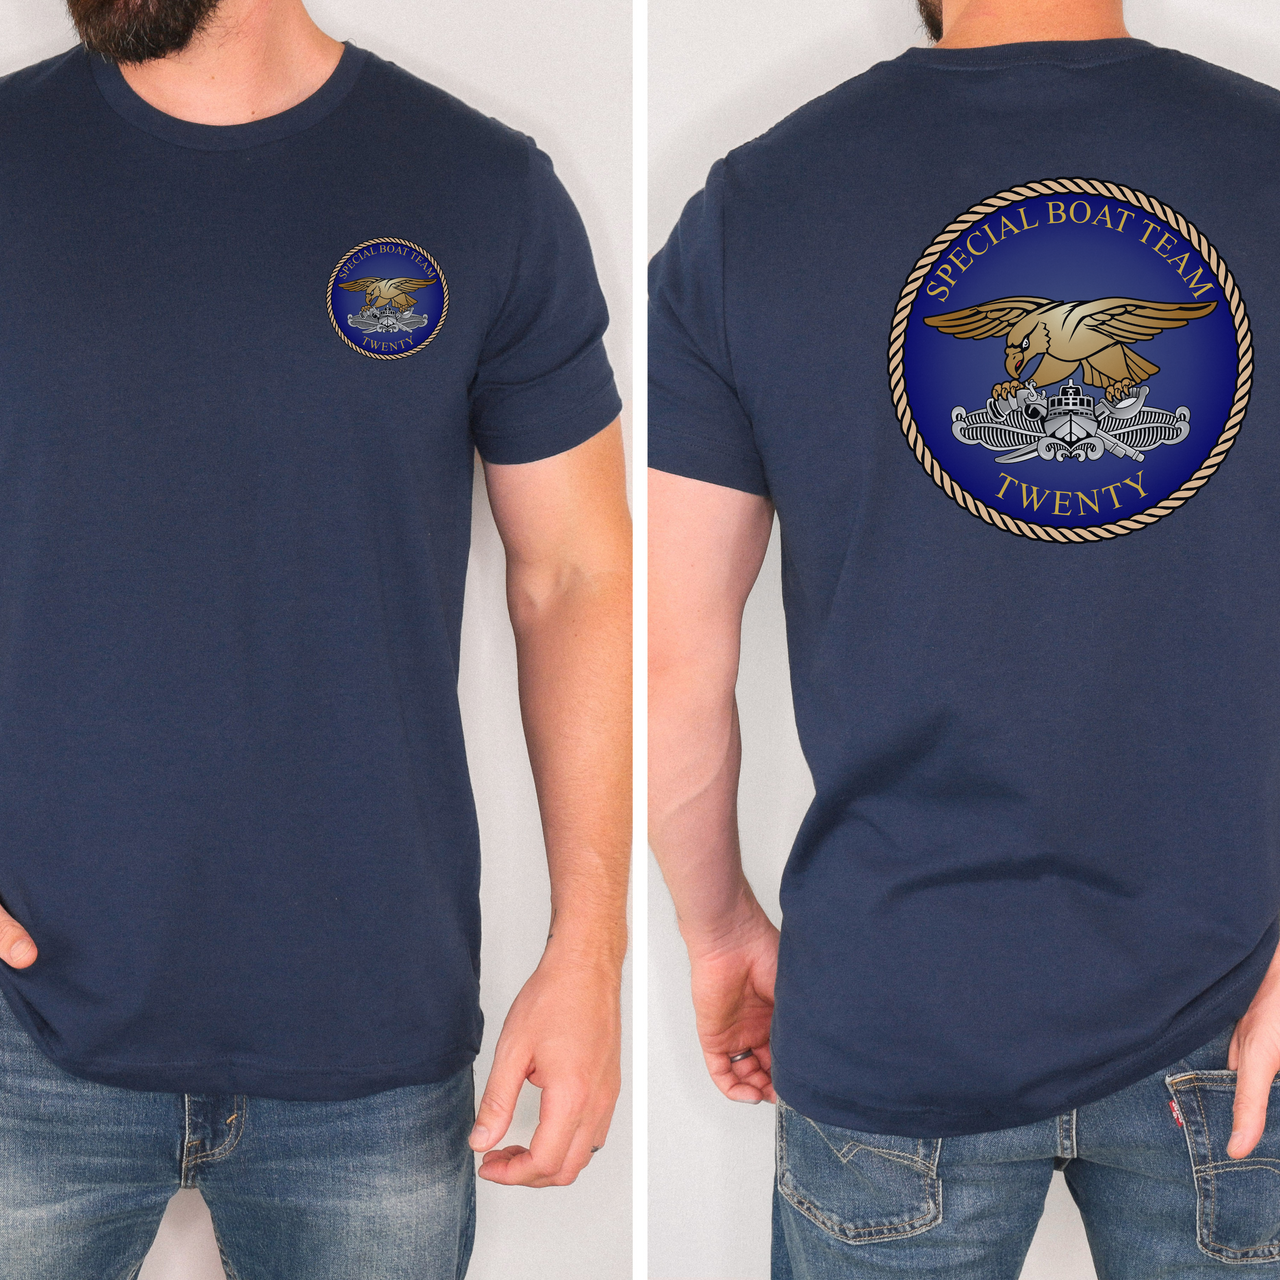 Special Boat Team 20 v1 - SBT 20 T-Shirt (Color)